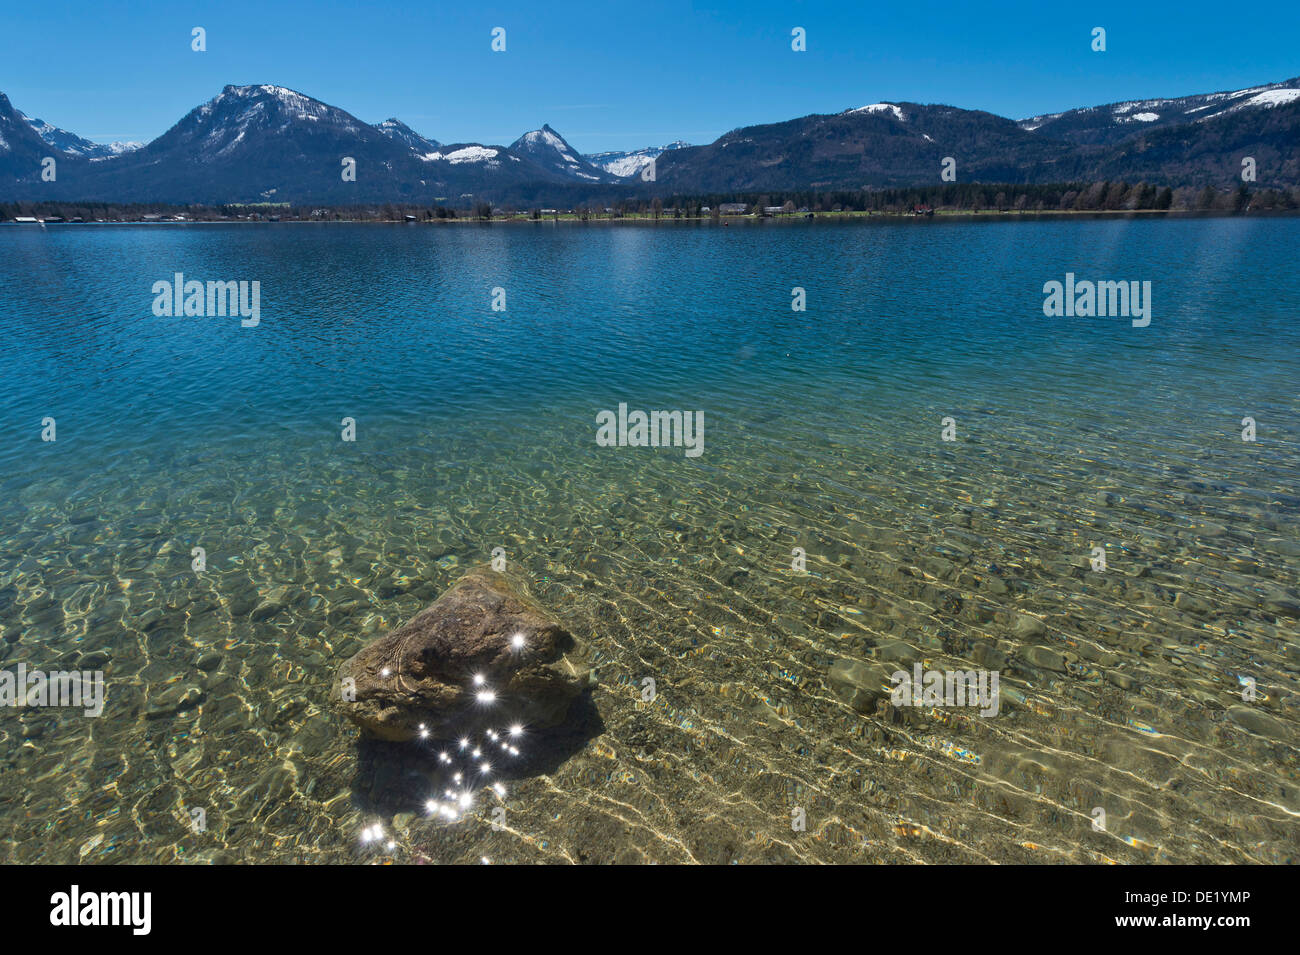 Le lac de Wolfgang, l'eau claire, Ried am Wolfgangsee, Salzburg, Autriche Etat Banque D'Images